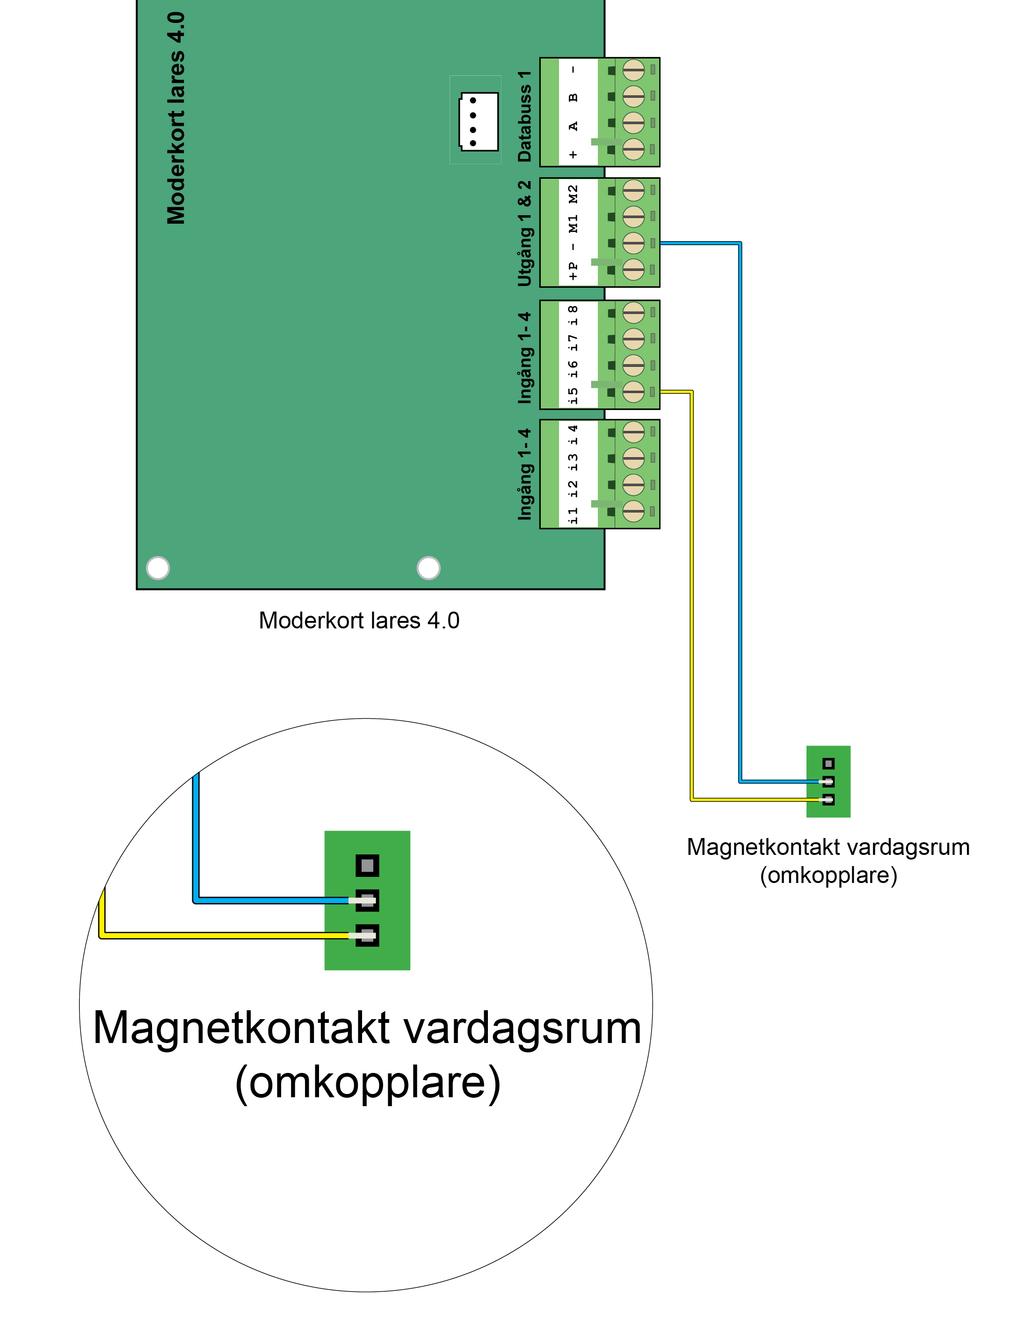 Steg 26 - Koppla in magnetkontakt vardagsrum (omkopplare) till moderkort lares 4.